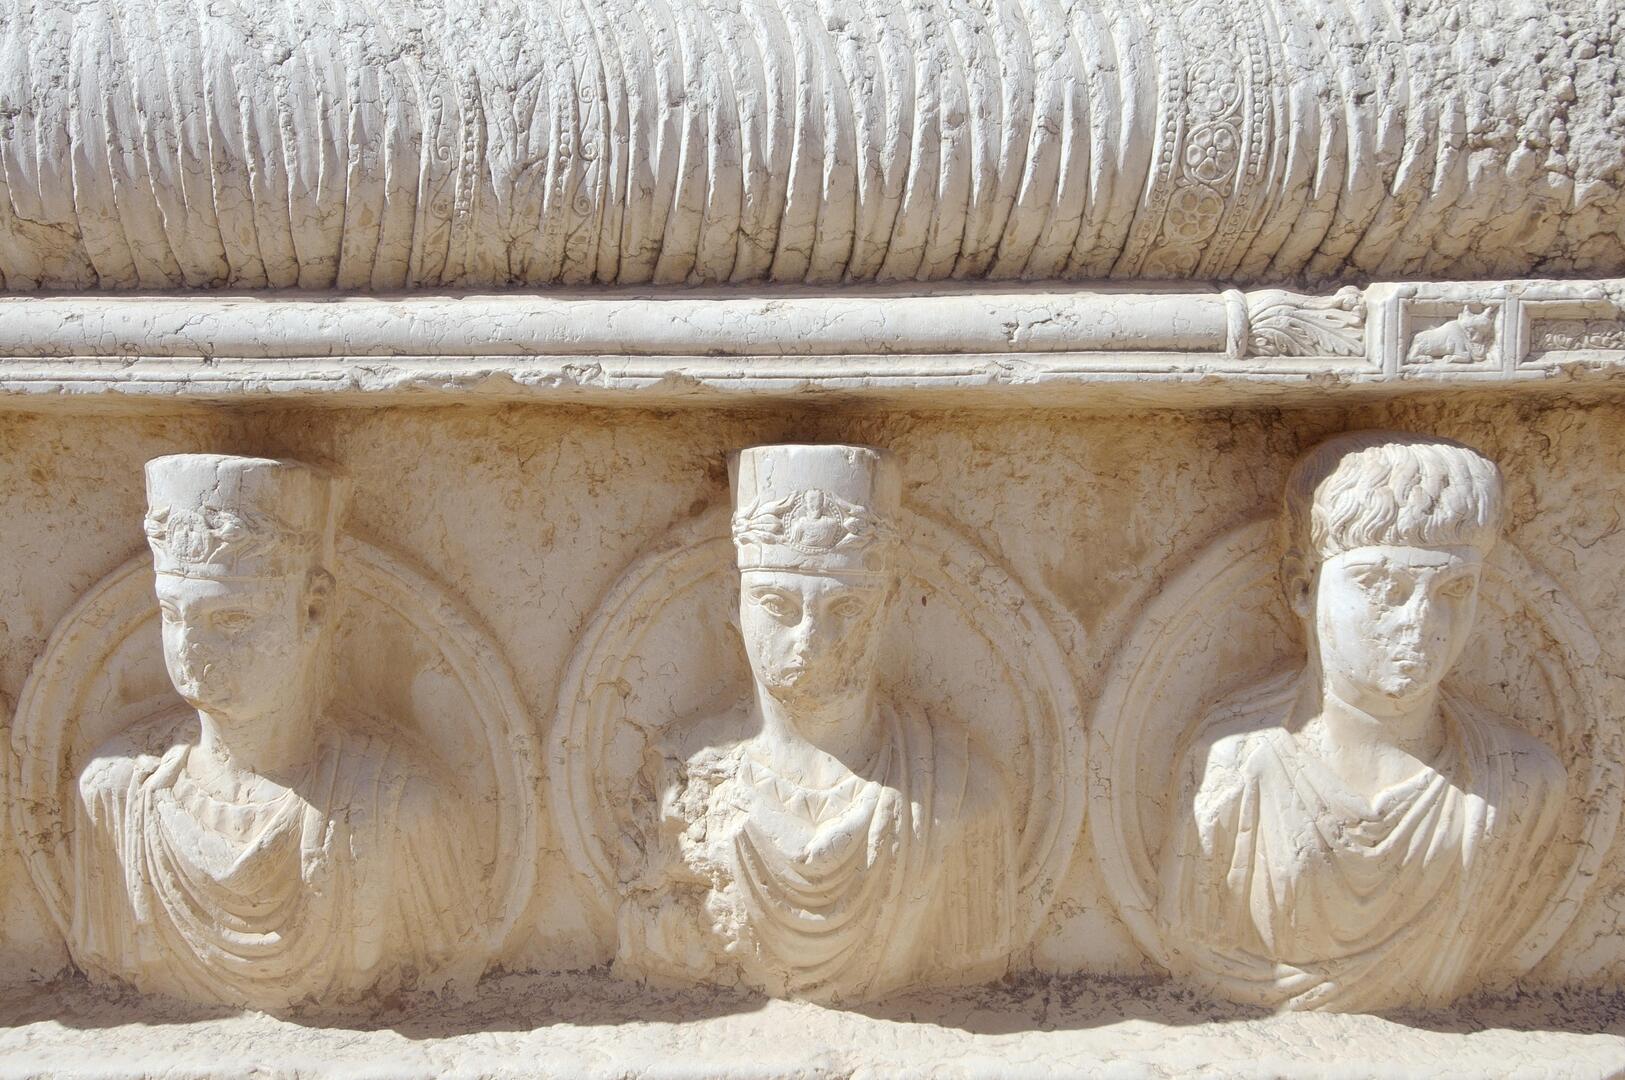 لبنان يعيد لسوريا 5 قطع أثرية مهربة ودمشق تنتظر استعادة آثار مهربة أخرى متواجدة بمتحف بيروت (صور)